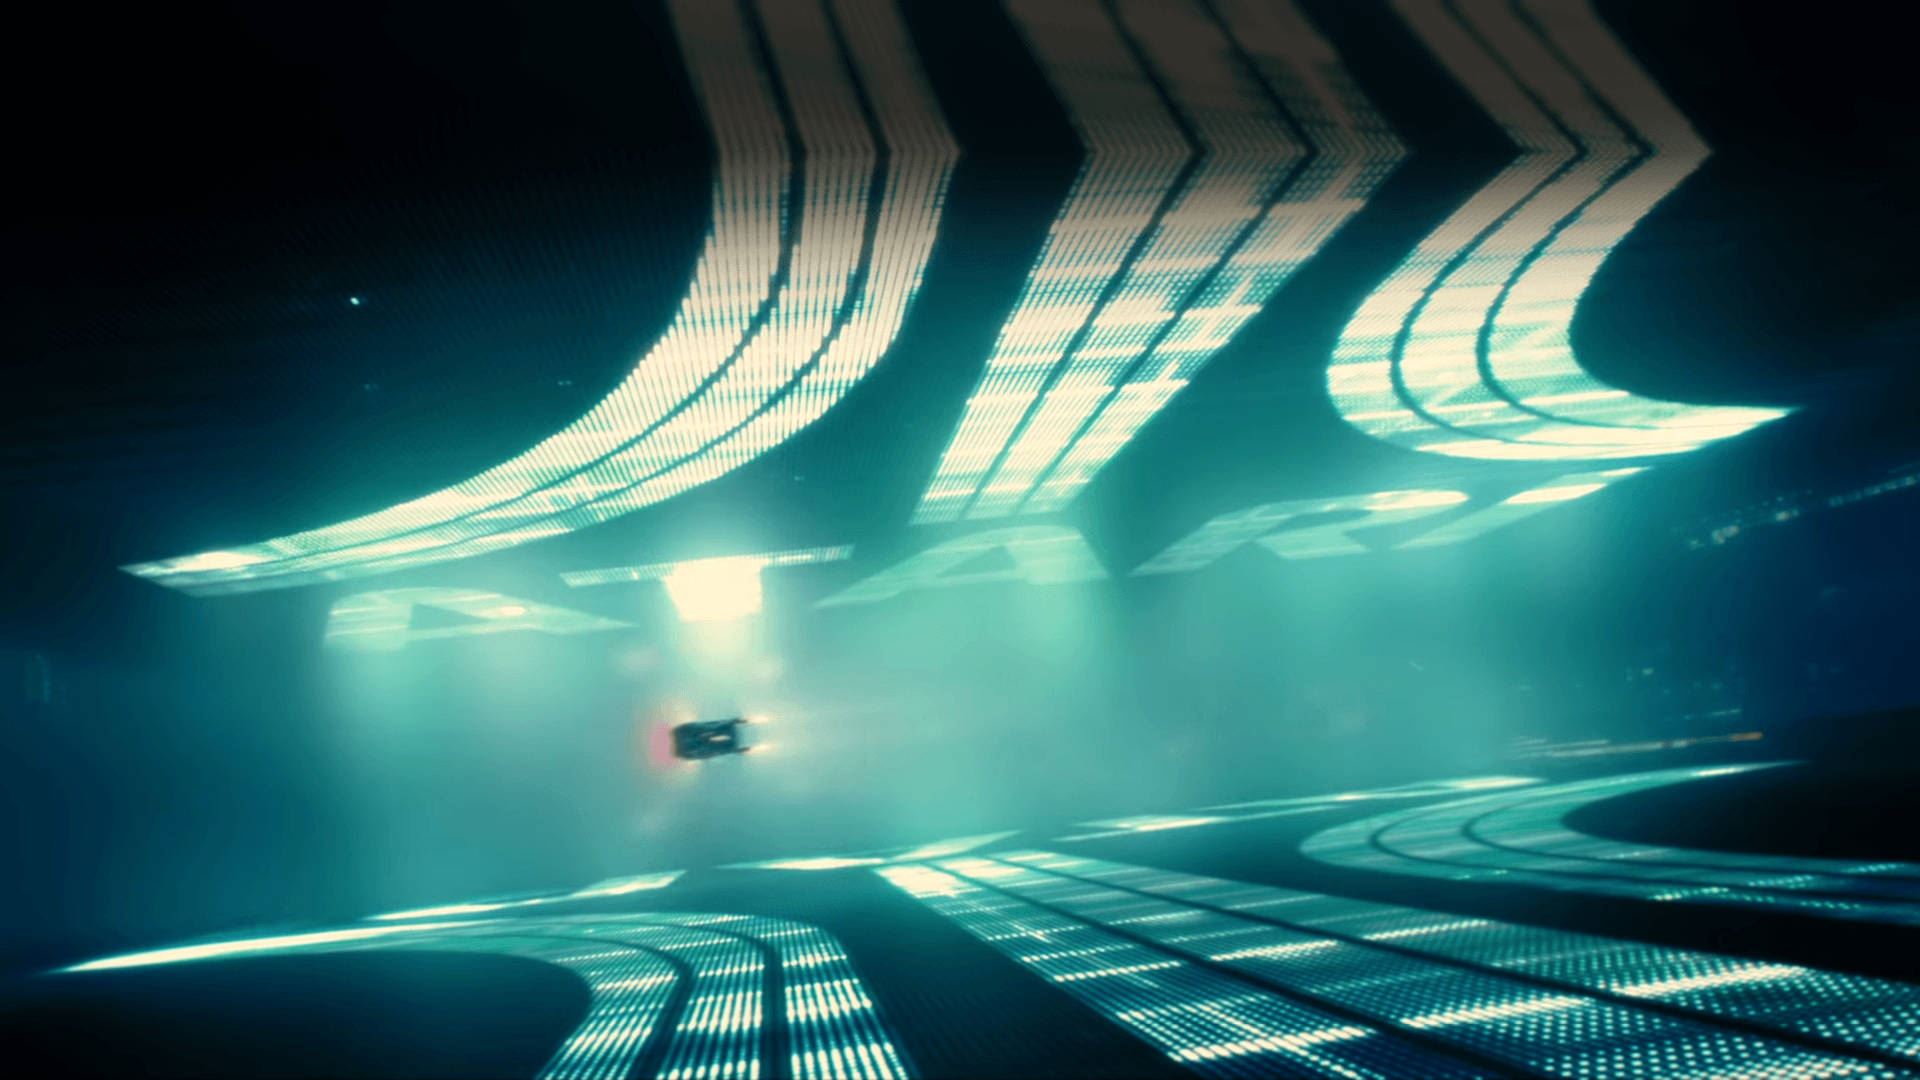 لوگوی آتاری در فیلم Blade Runner 2049